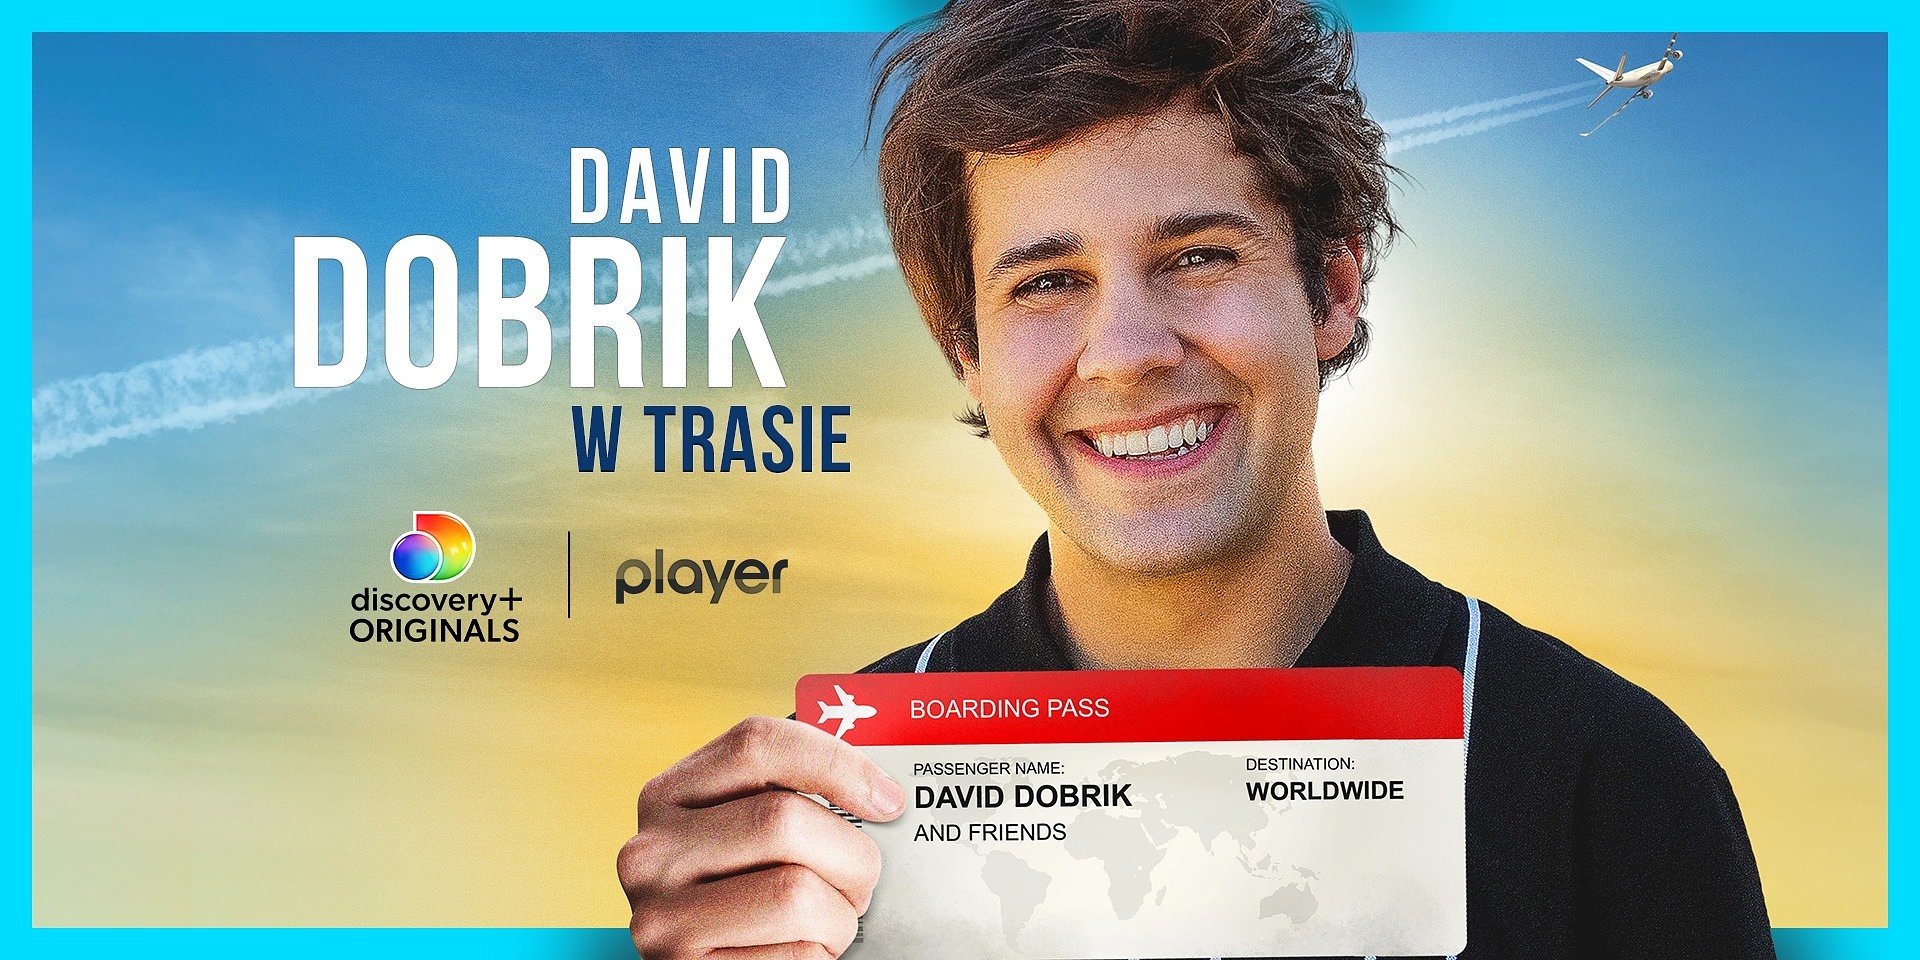 Nowa seria podróżnicza w Player! “David Dobrik w trasie” – gdzie zabierze nas popularny twórca z YouTube?